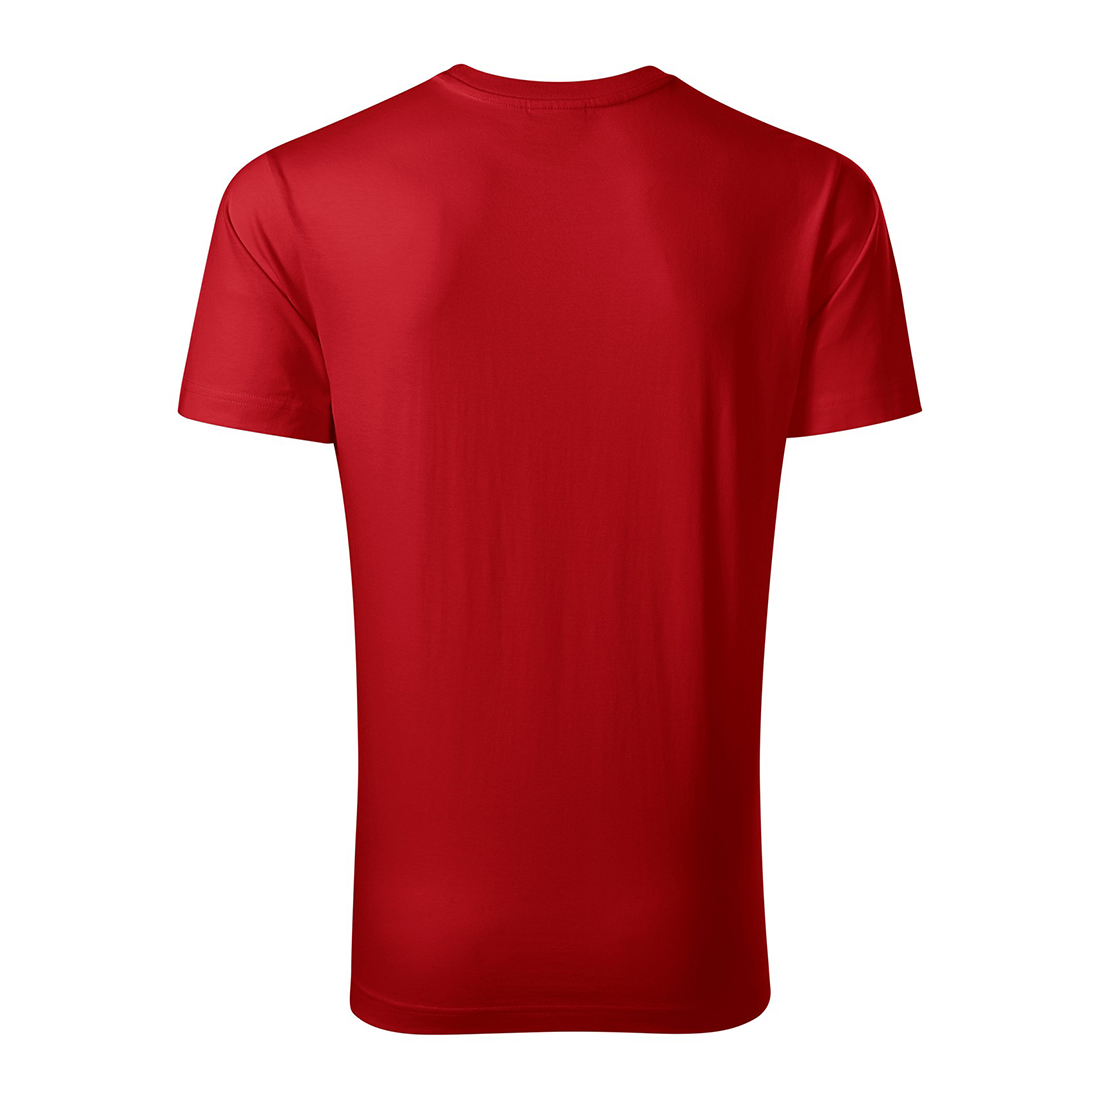 Vorgewaschenes Baumwoll-T-Shirt für Herren - Arbeitskleidung